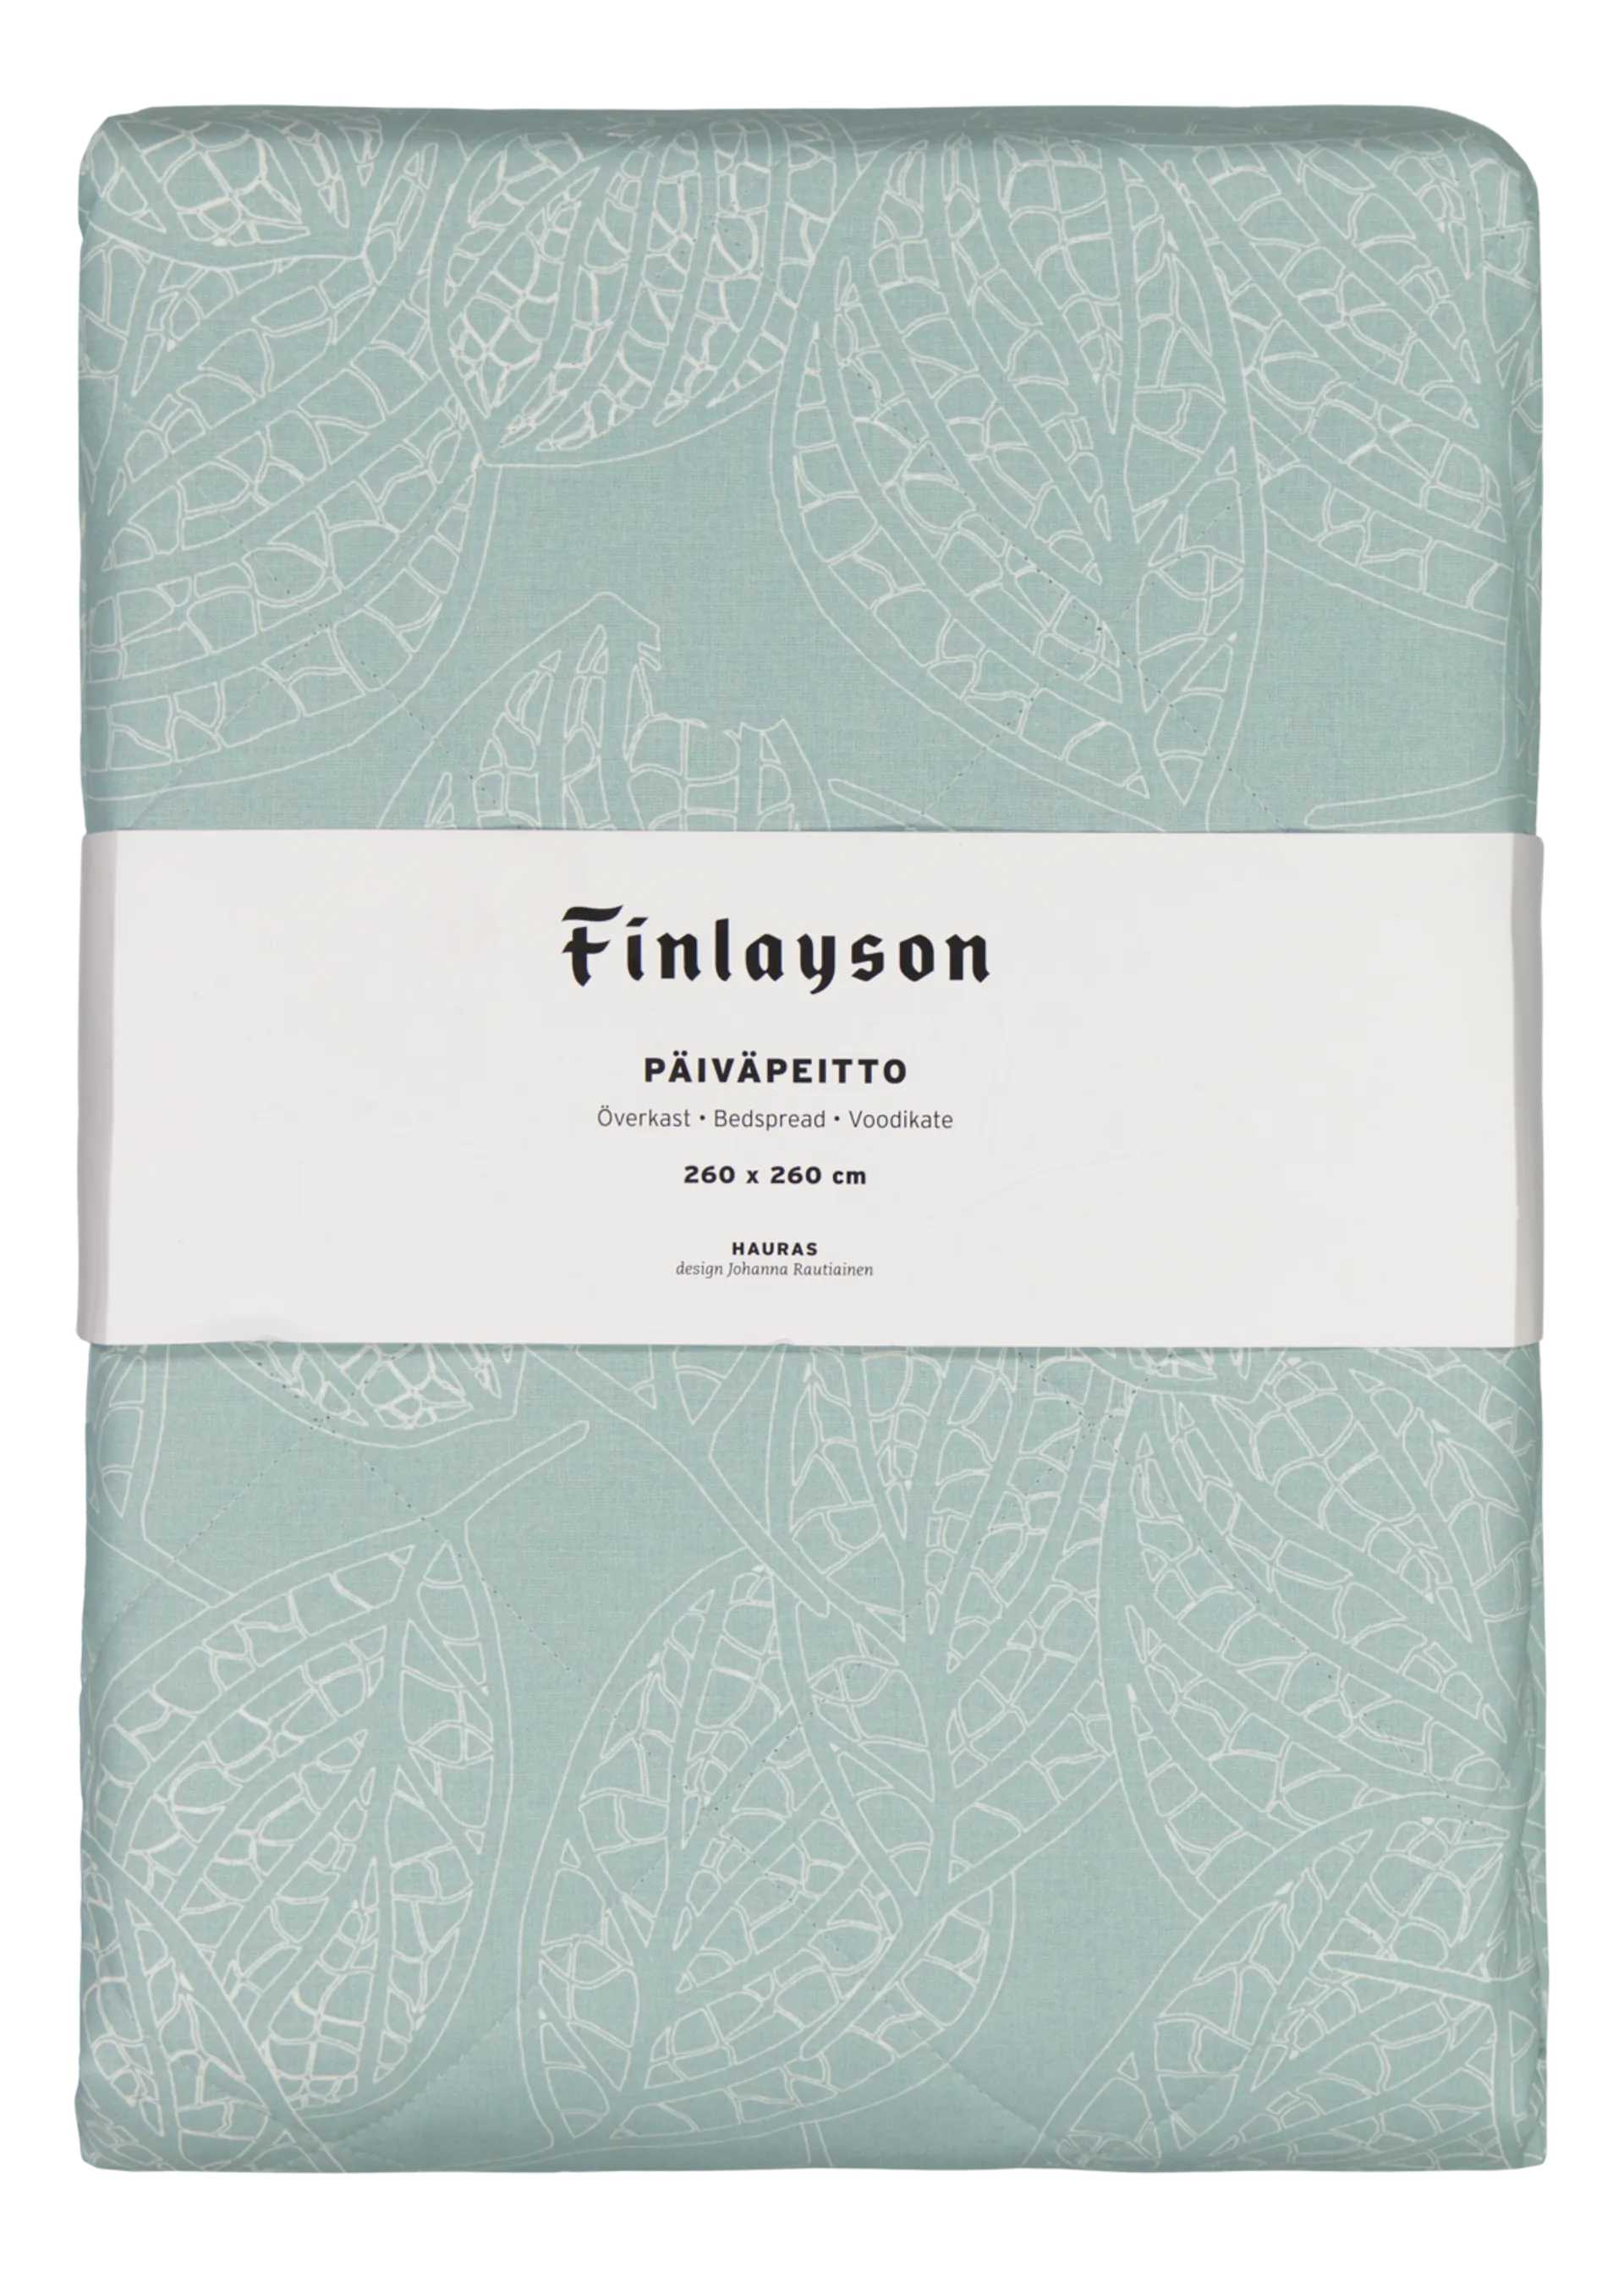 Finlayson päiväpeitto Hauras 260x260 cm aqua - 2